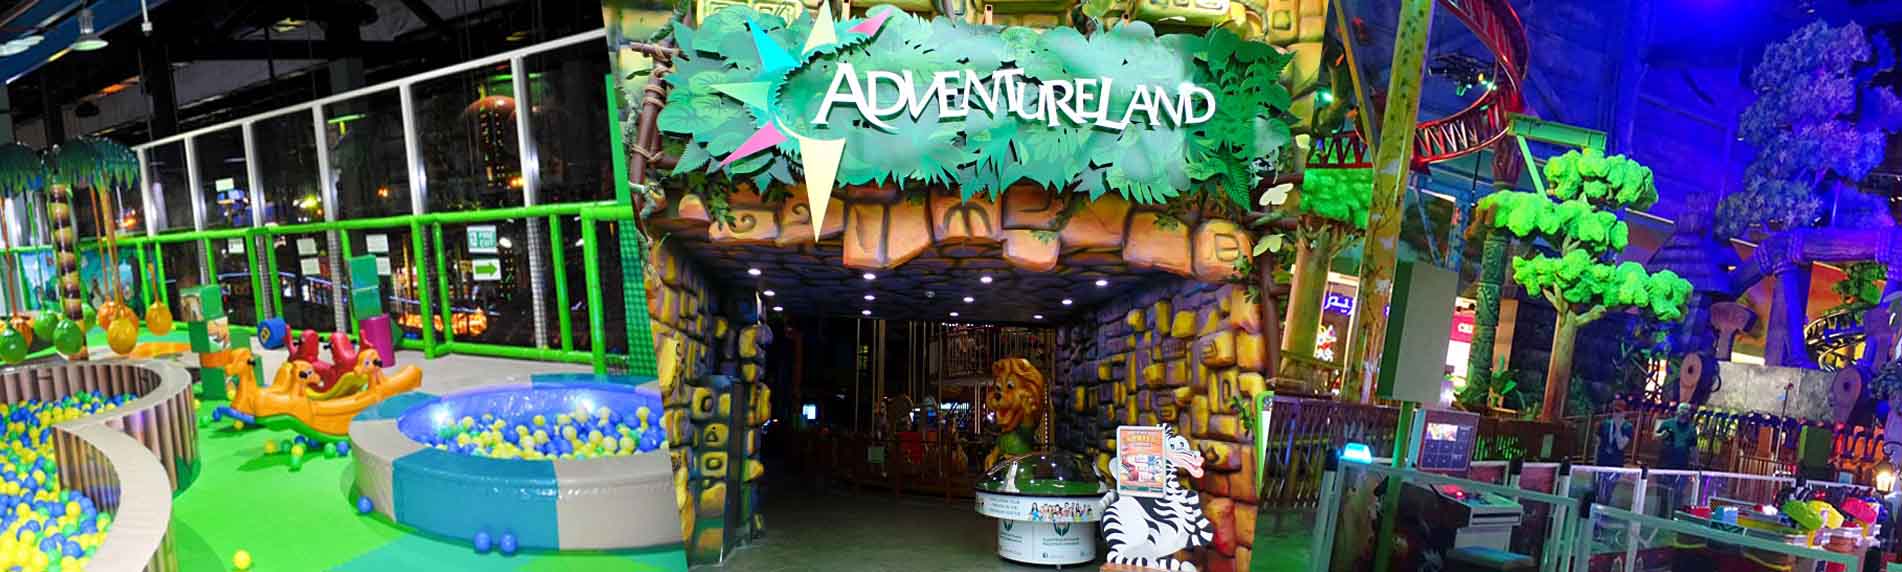 Adventureland Sharjah Tickets - Best Indoor Theme Parks in the UAE